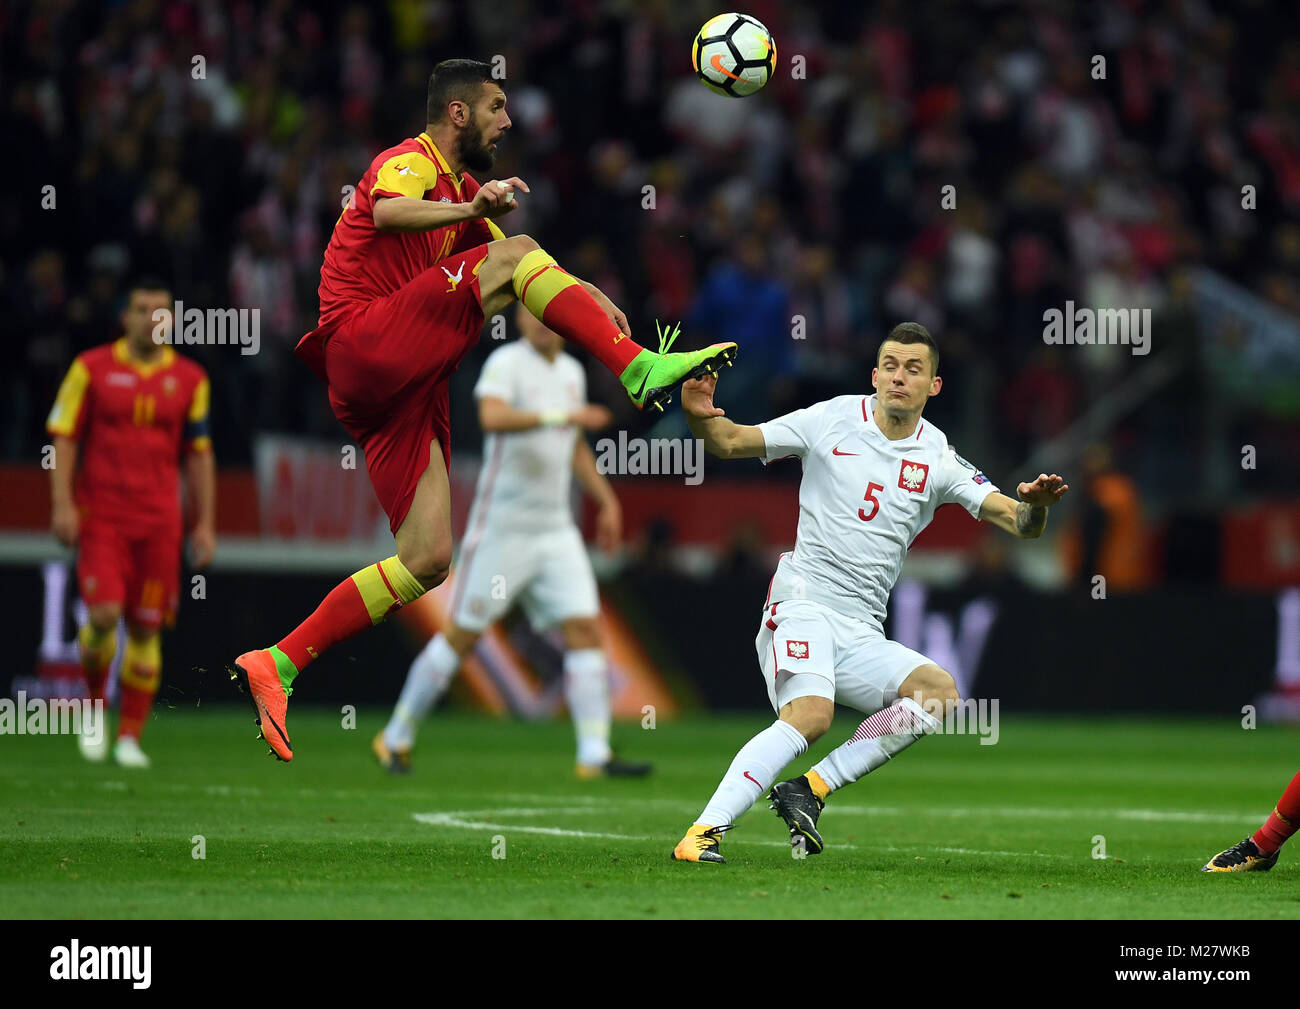 8 Oktober, 2017 - Warschau, Polen: Fußball WM 2018 Qualifikation Rusia Polen - Montenegro o/p Krzysztof Maczynski (Polen) Stockfoto